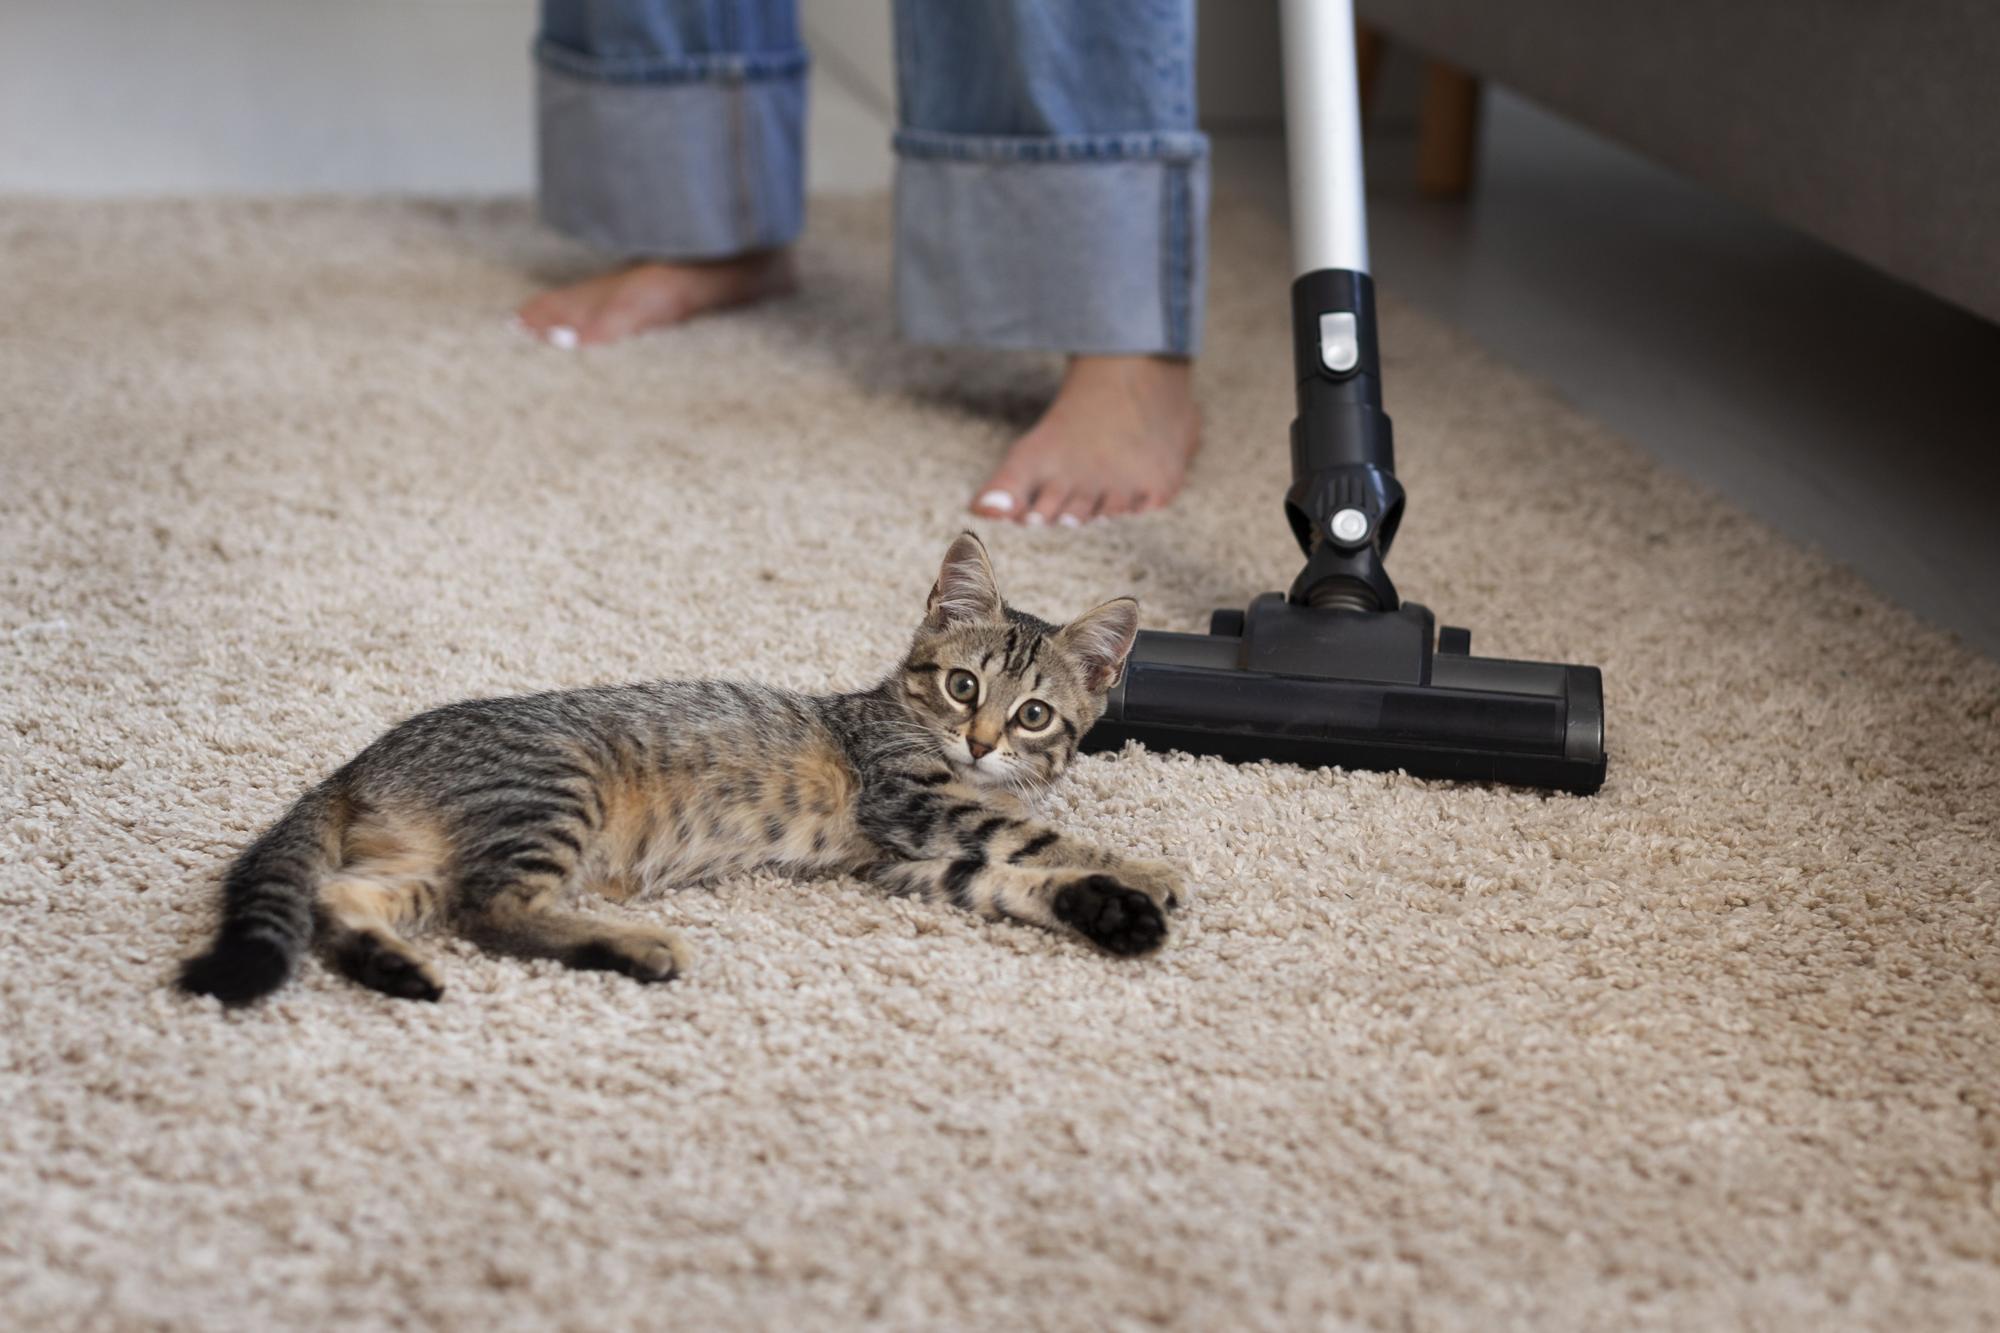 Limpieza de la casa con aspiradora cepillo de aspiradora con gato mascota